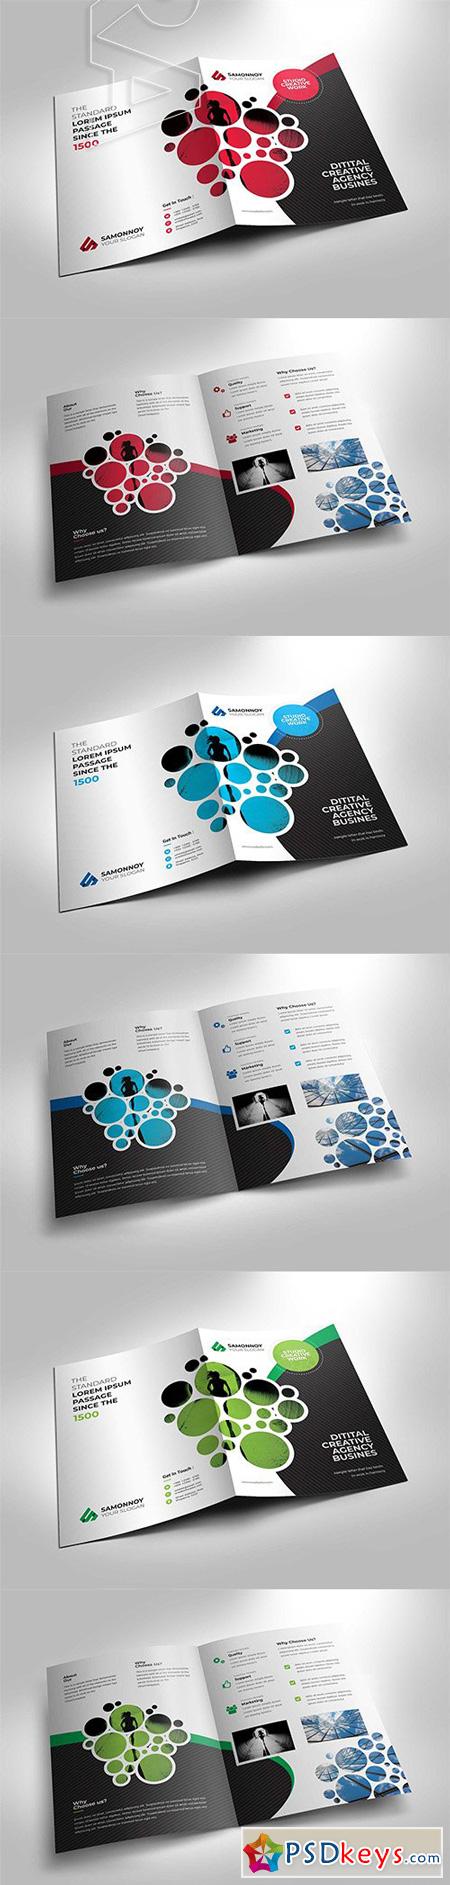 Corporate Bi-fold Brochure Template